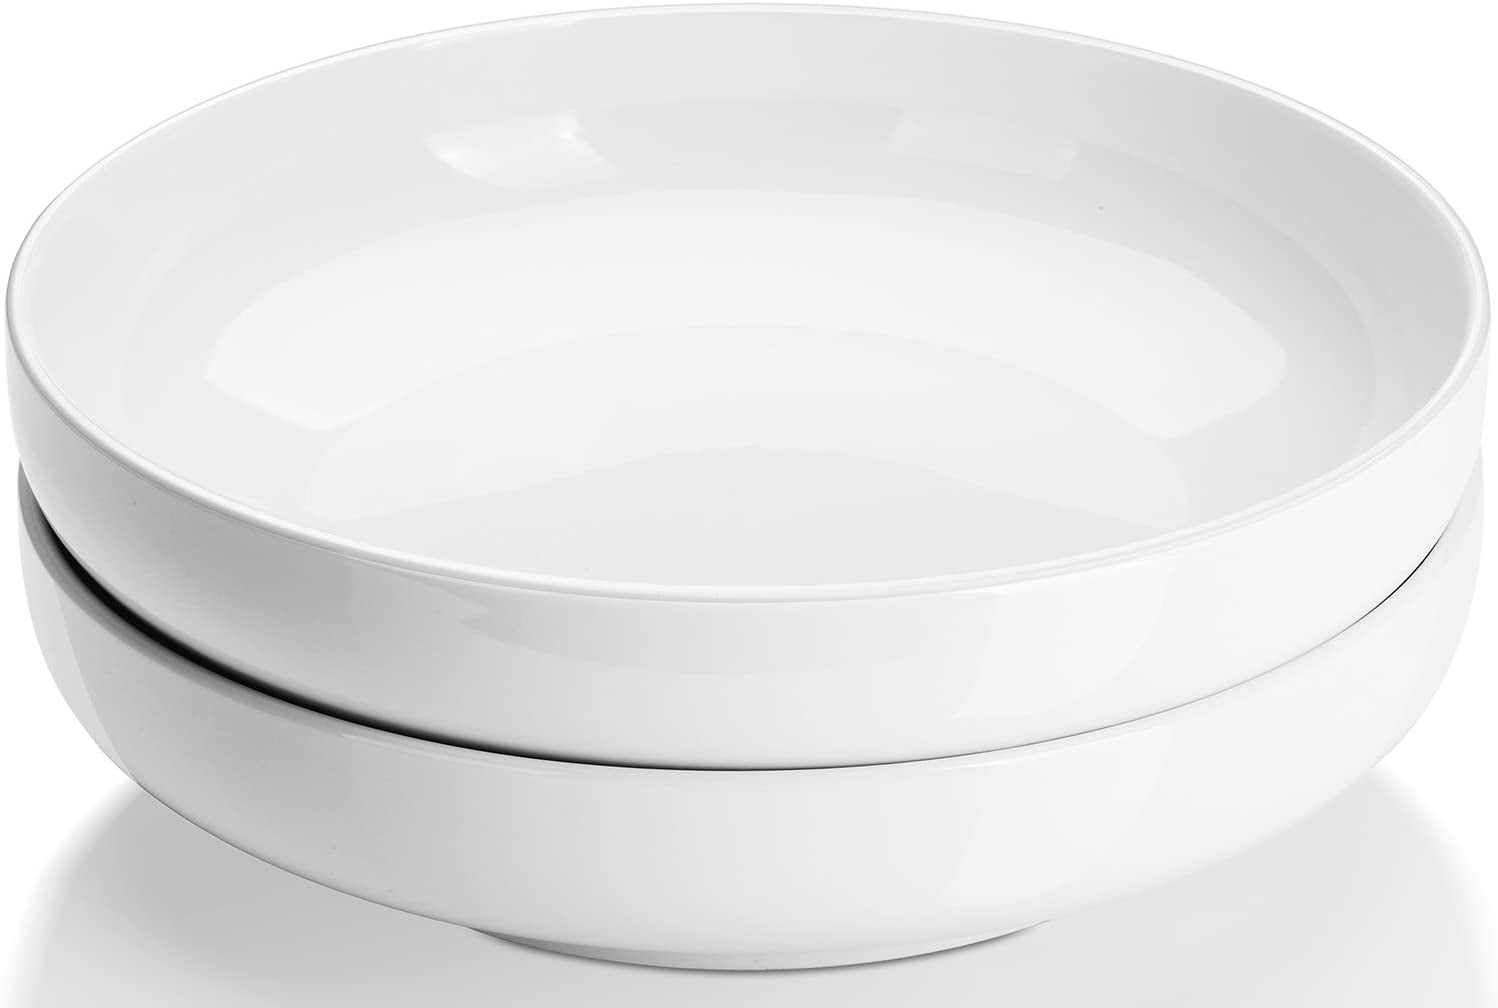 Large White Serving Bowls - Dowan? – Dowan®